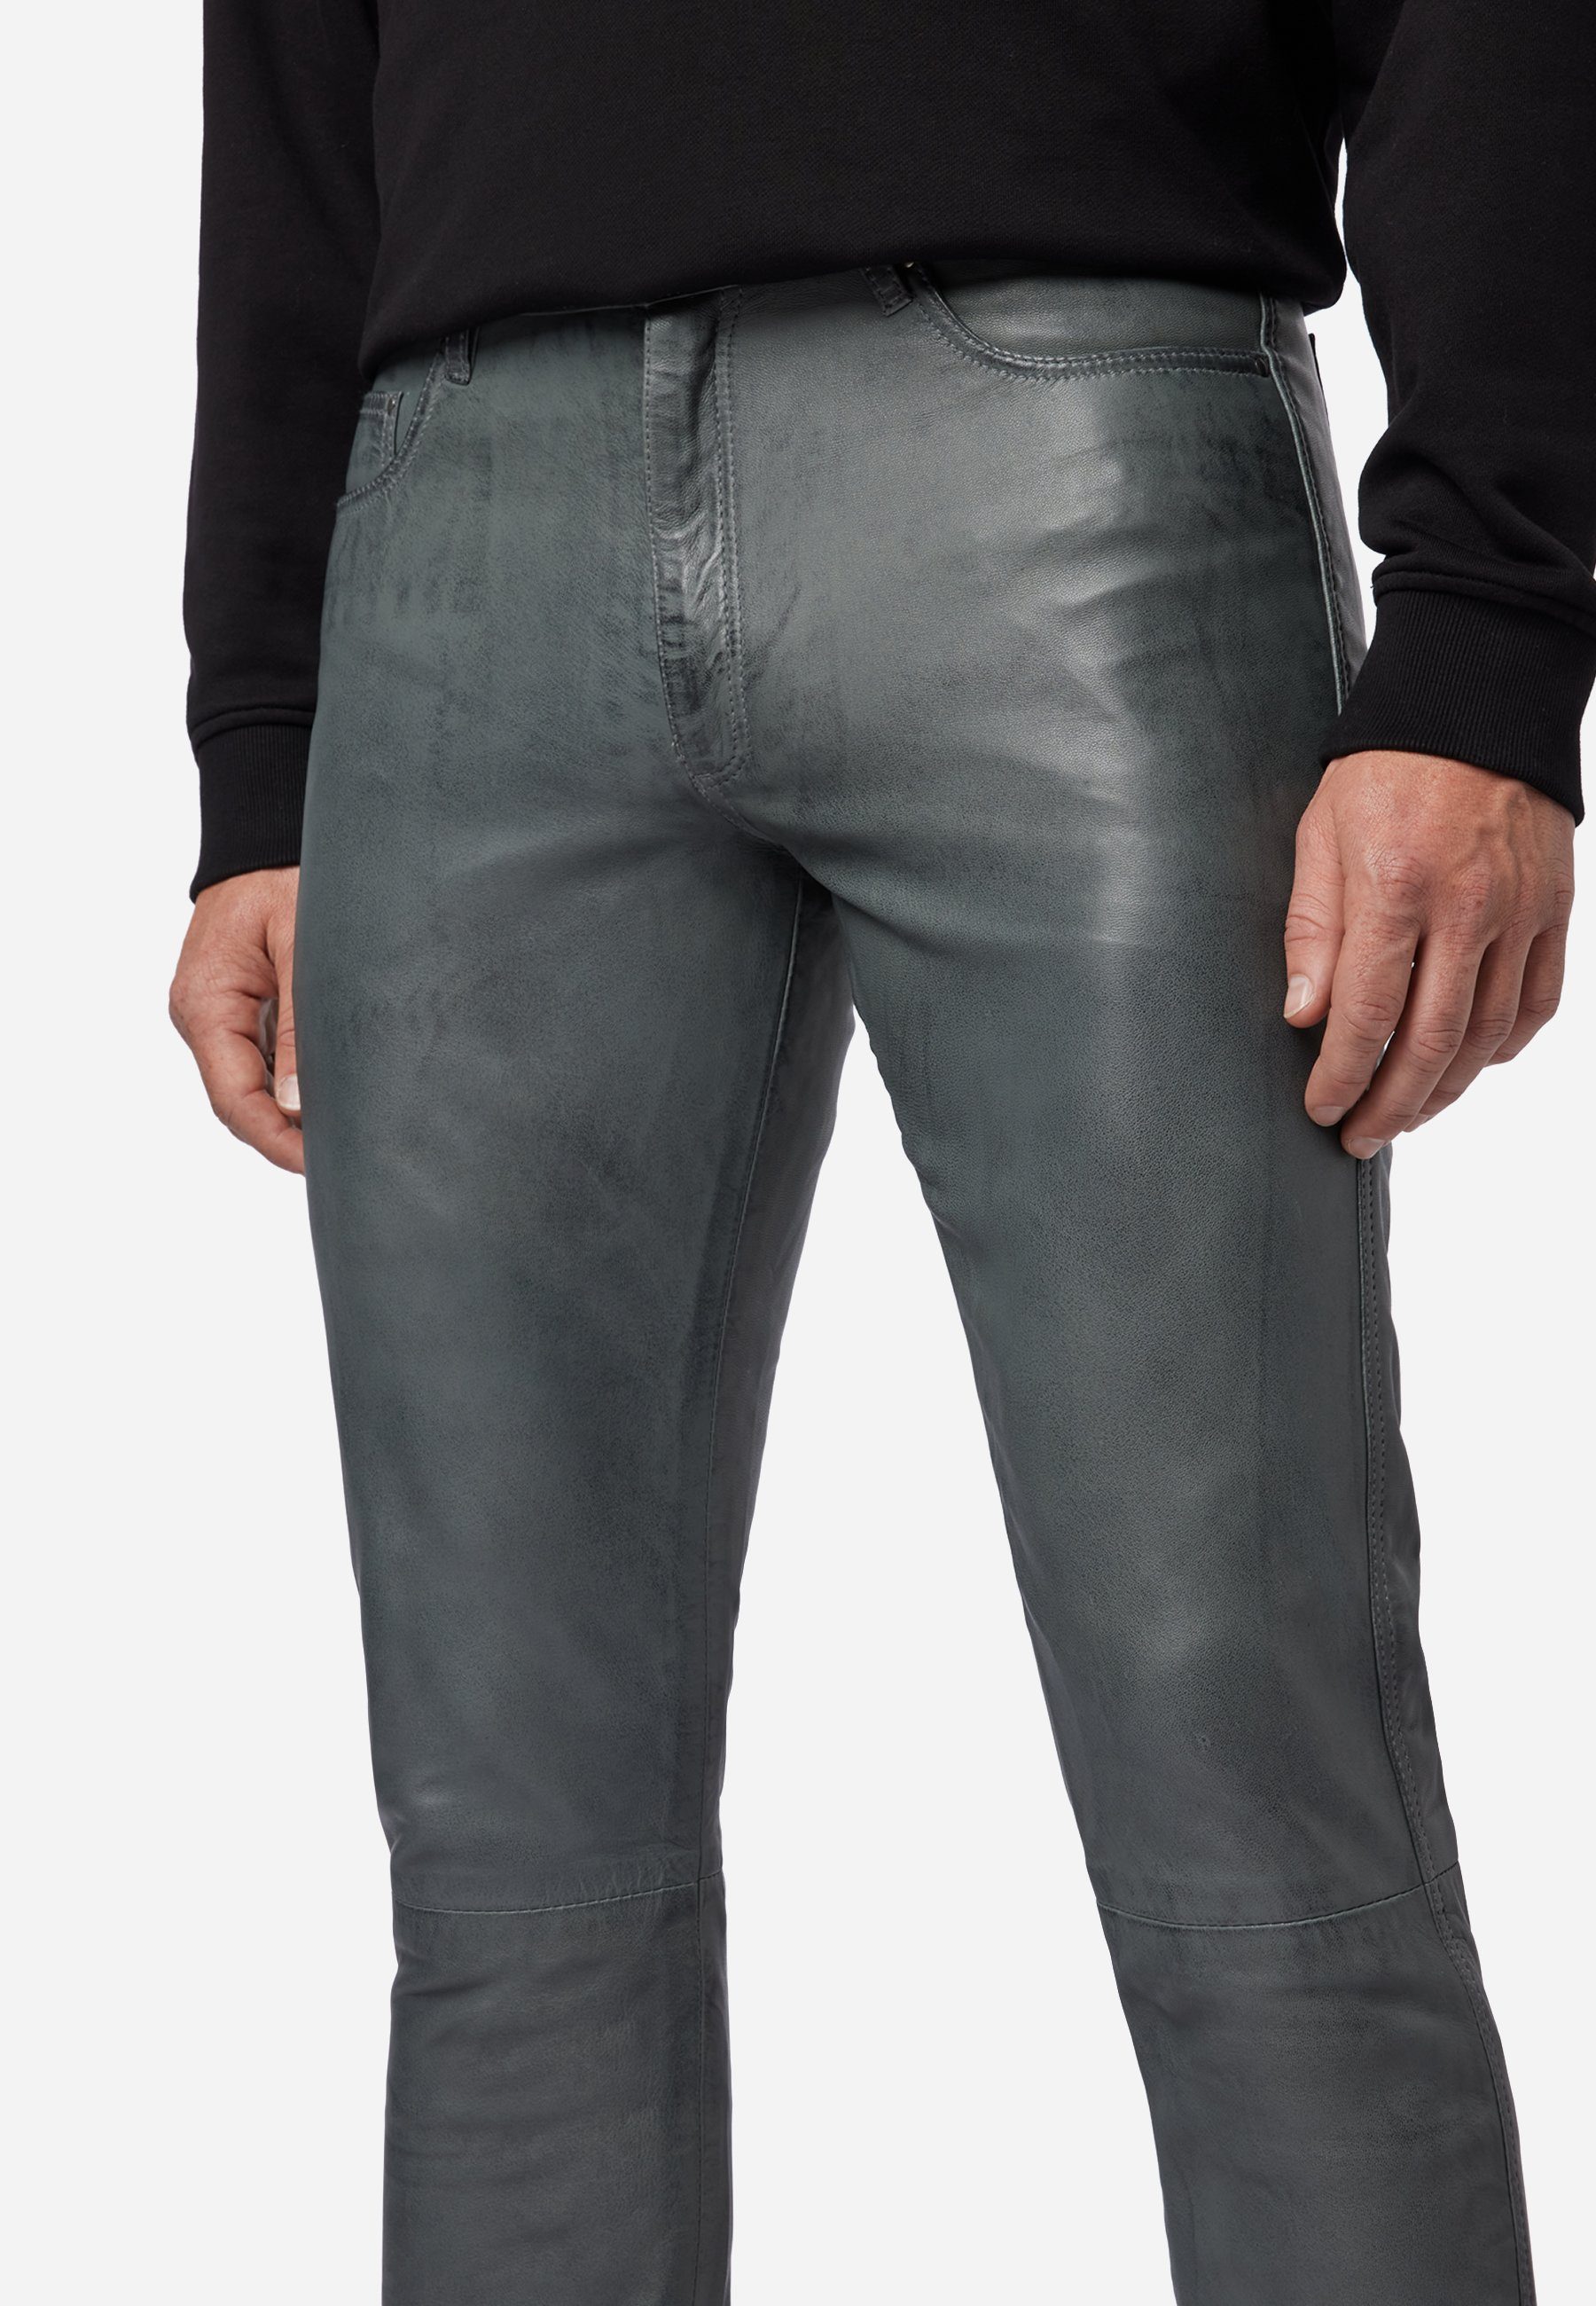 No. – Stil Fit Leder RICANO Grau Lederhose 5-Pocket Lederjeans / - TR 3 Slim Lamm Hochwertiges